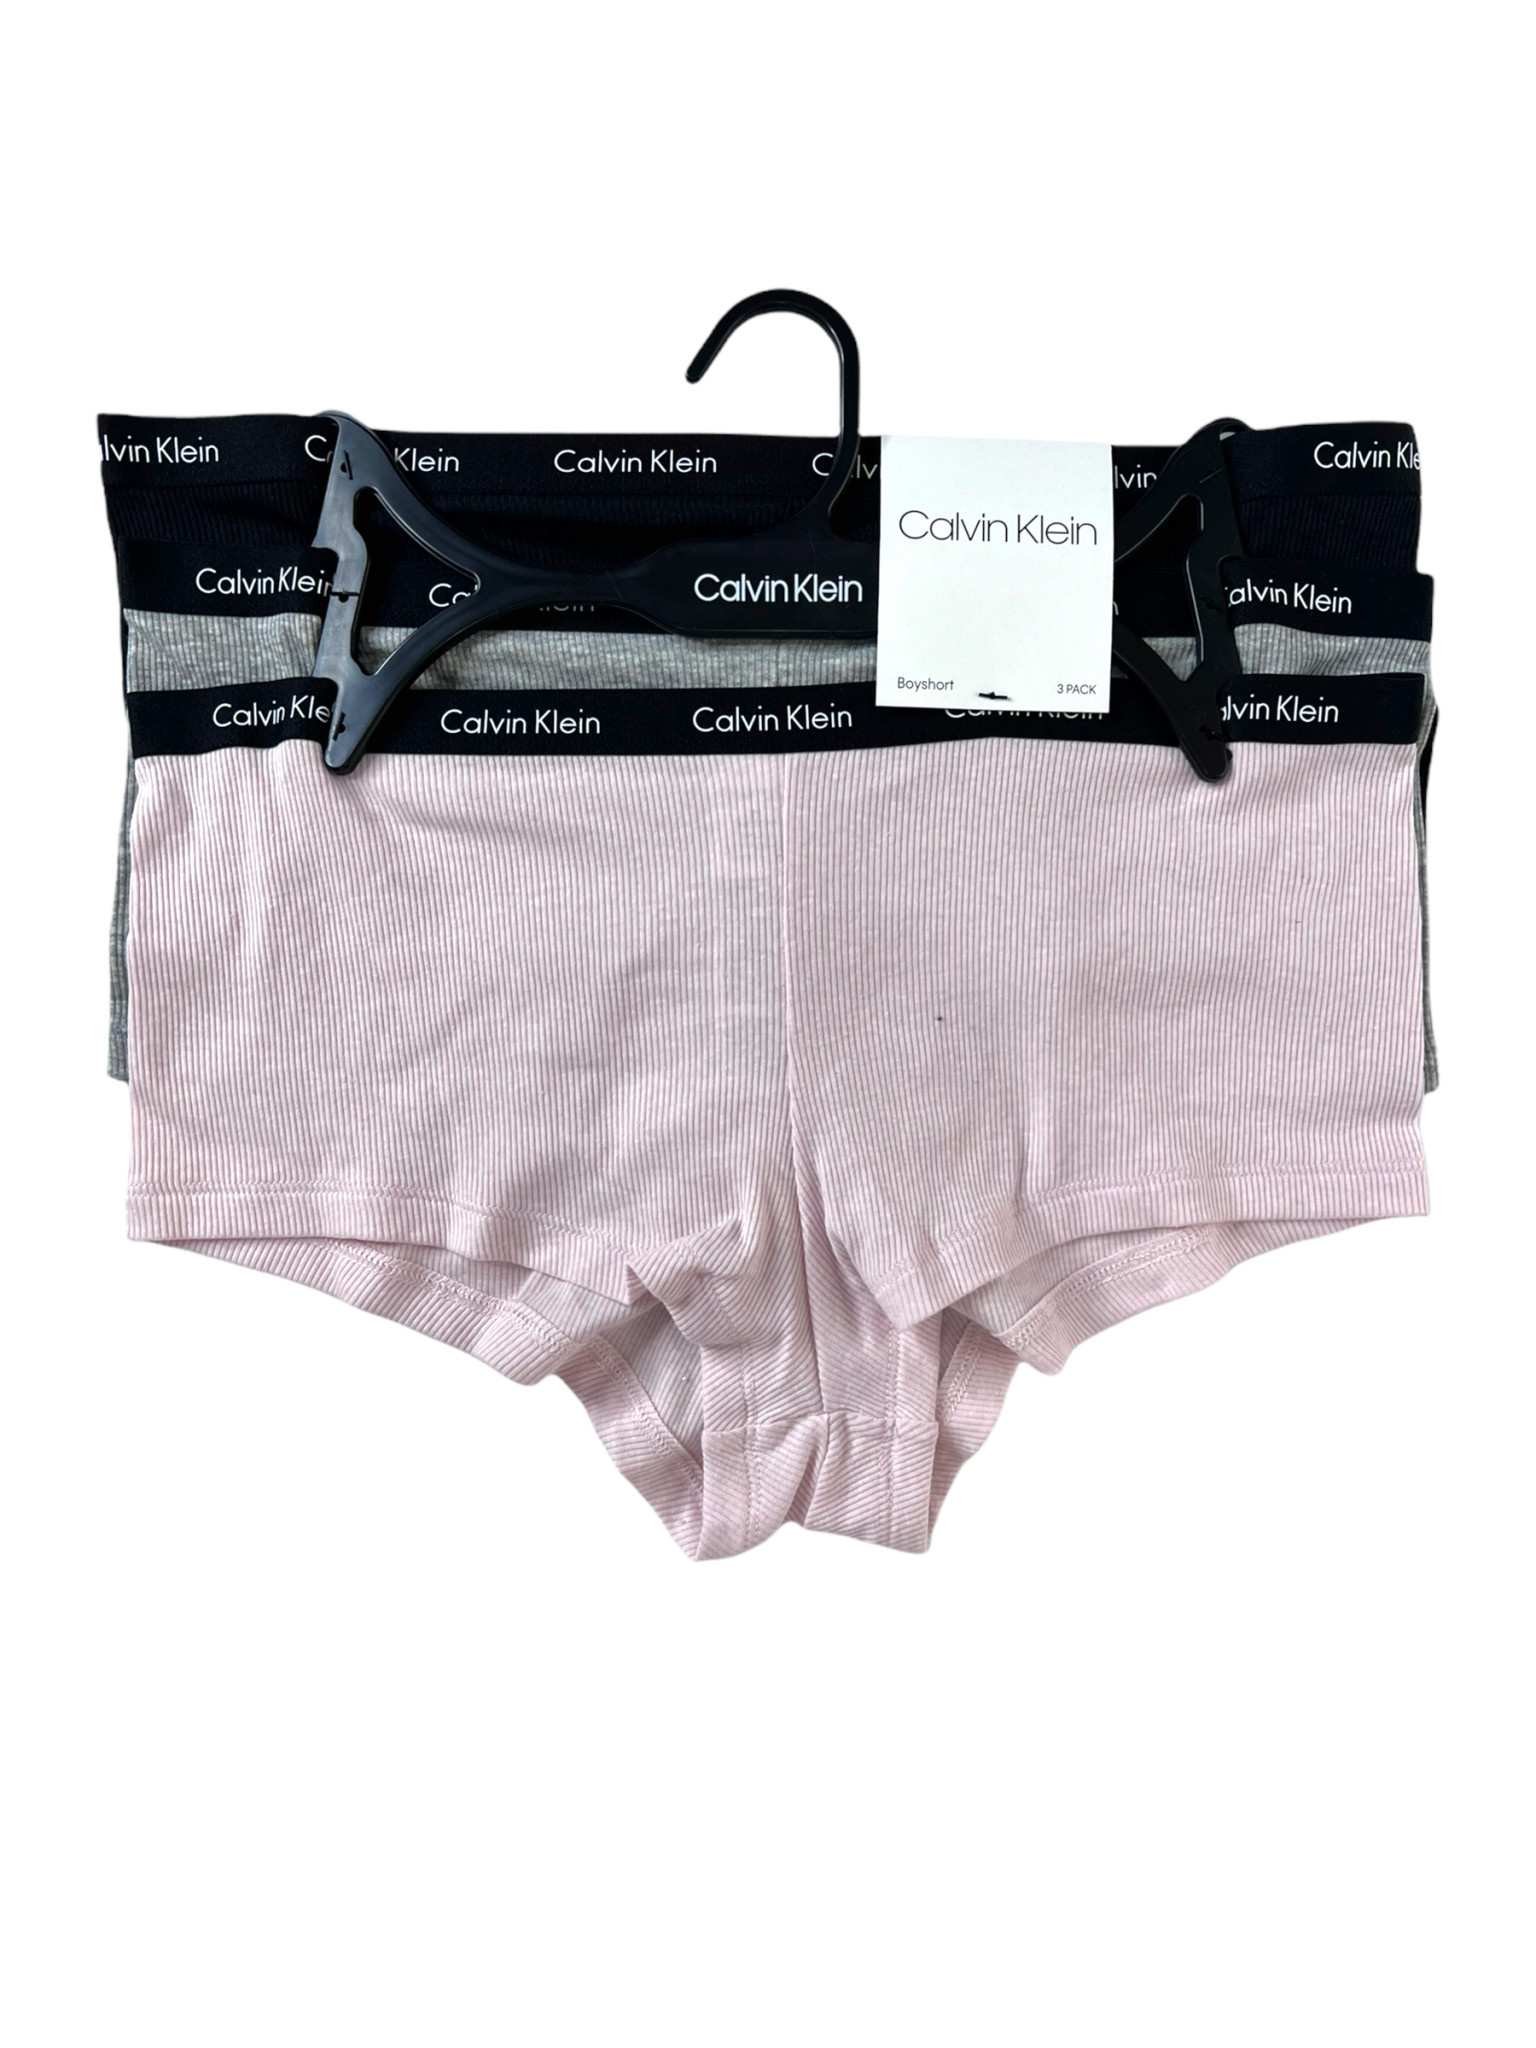 Boy Shorts Calvin Klein Panties